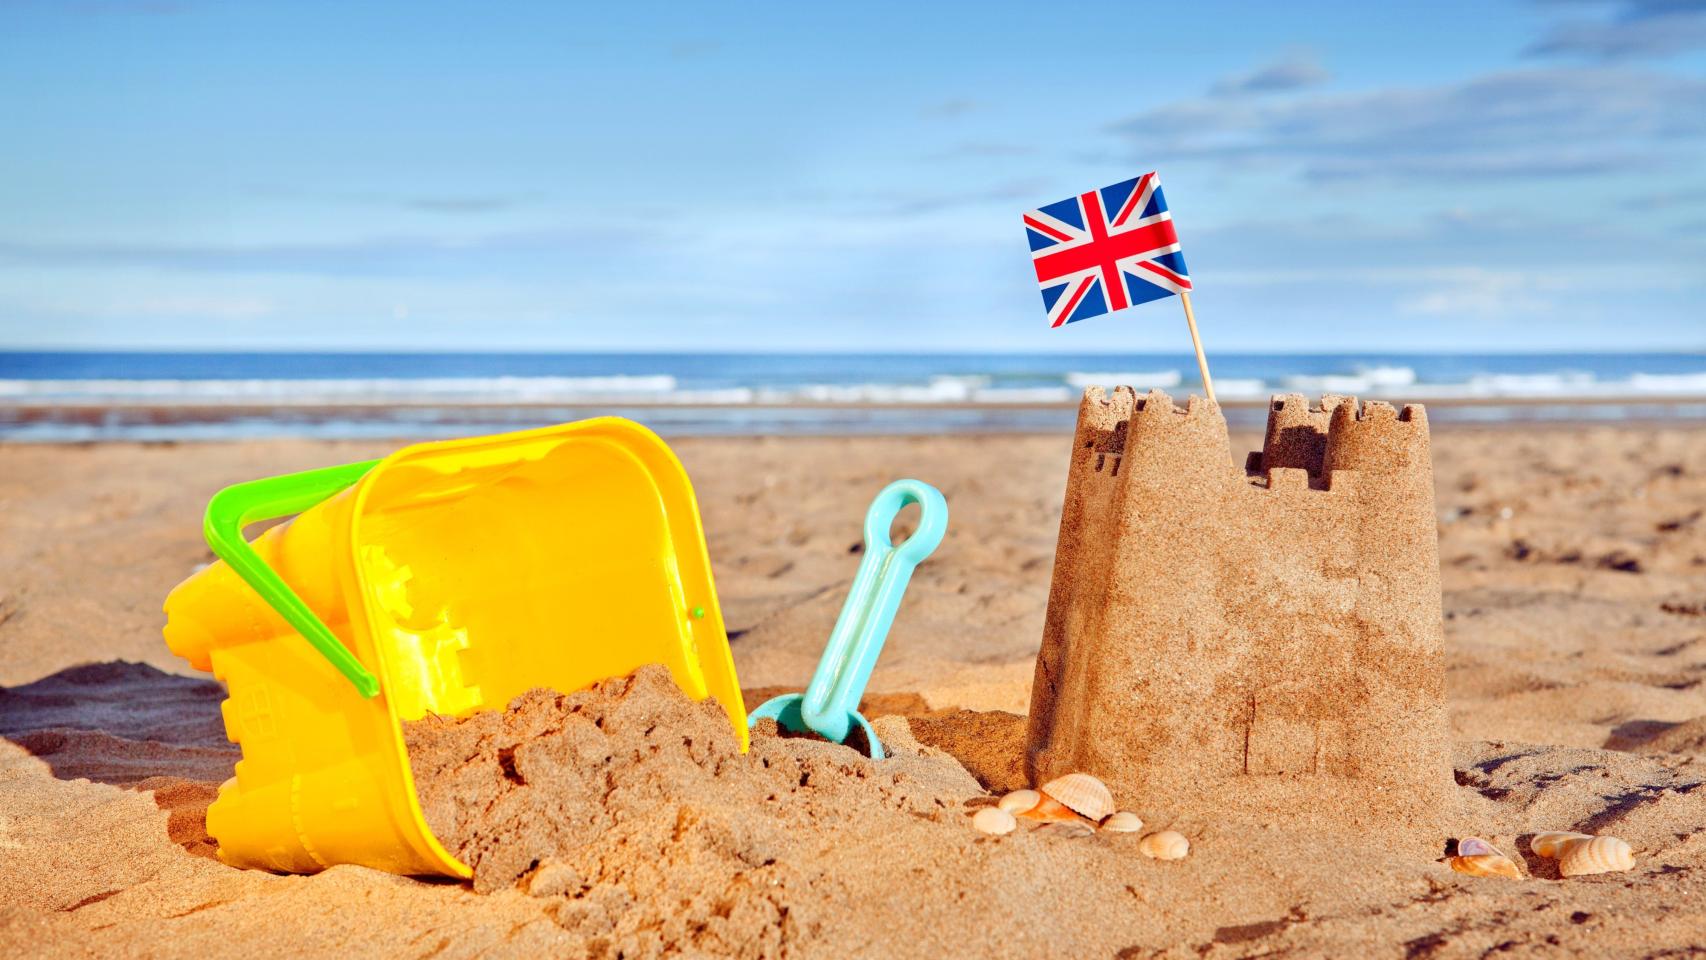 Un castillo de arena en la playa con una bandera de Reino Unido encima, en una imagen de archivo.